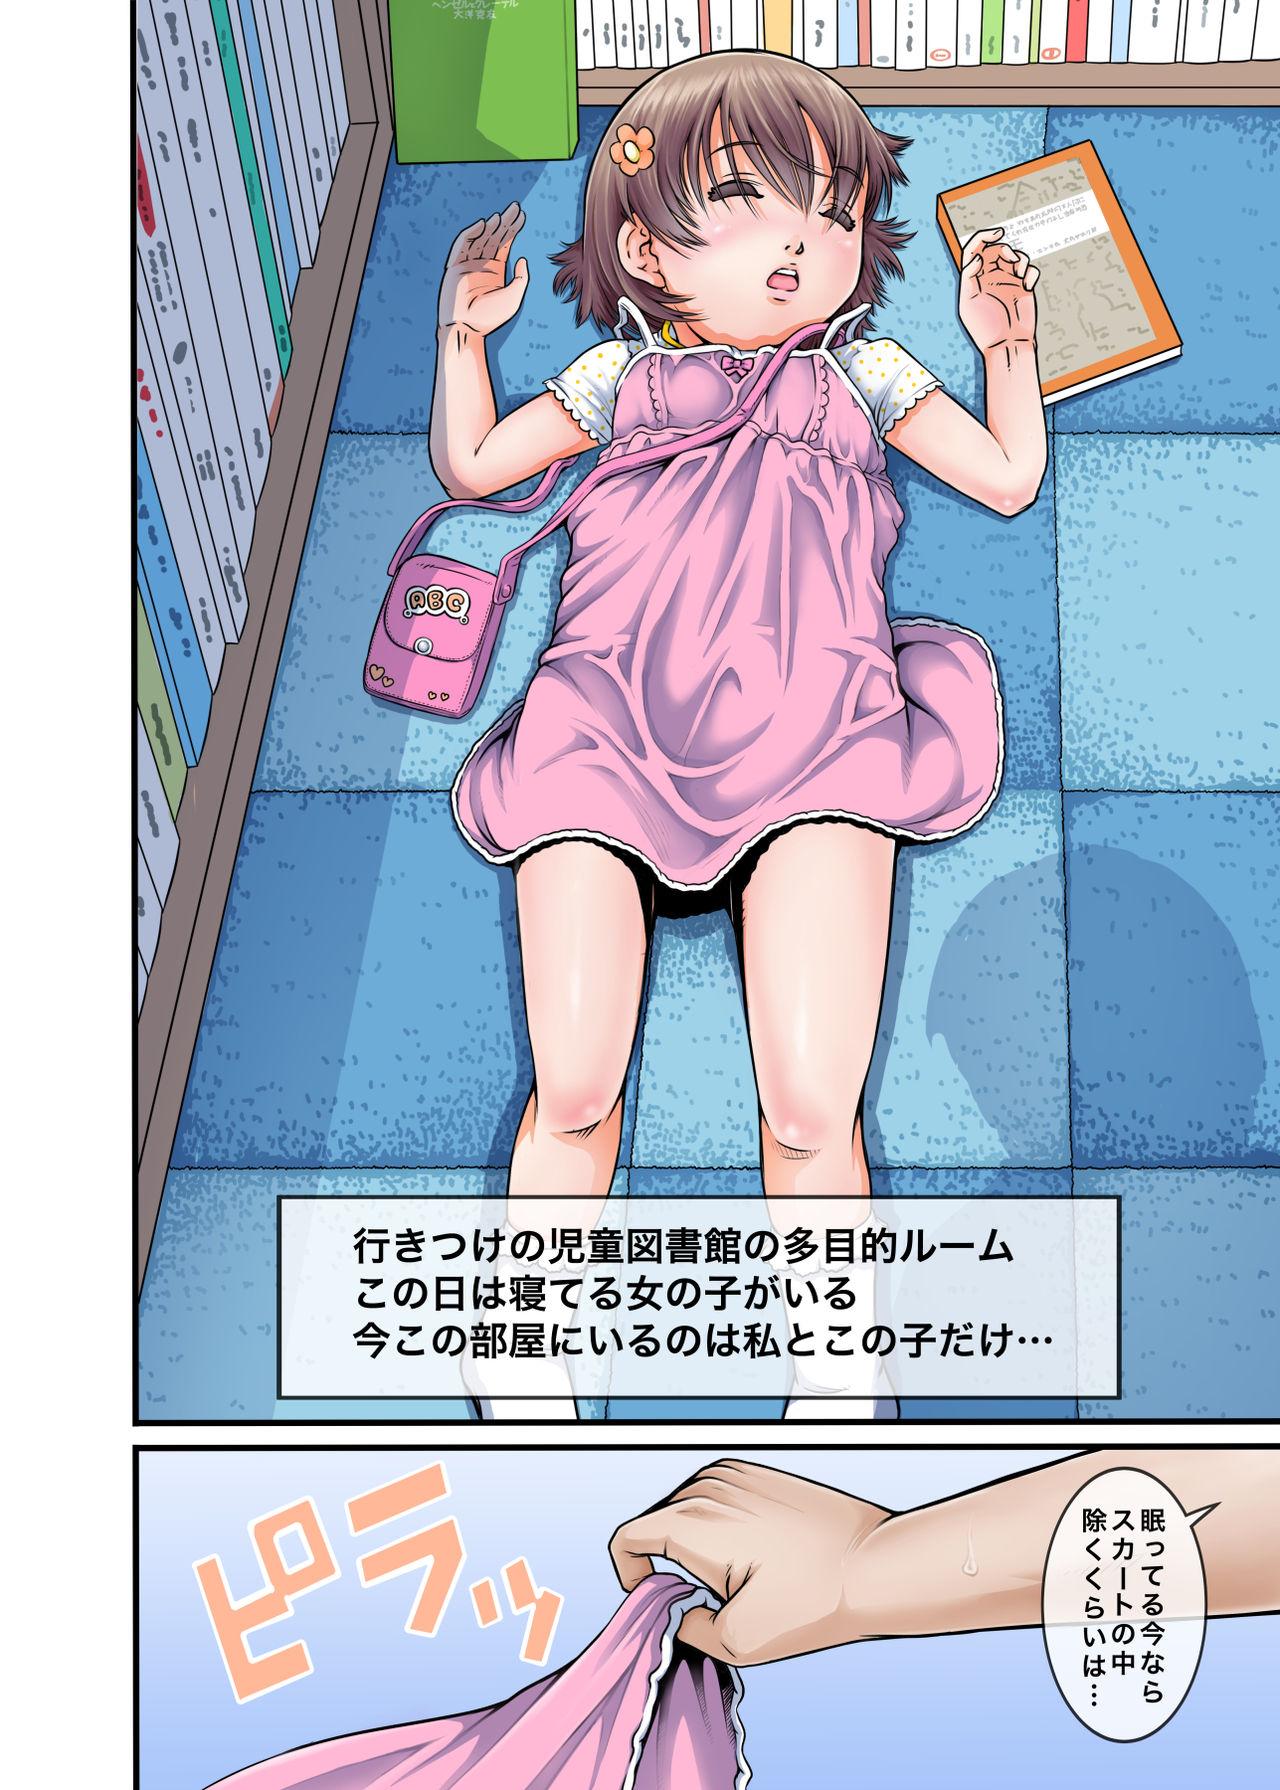 Stranger Bokutachi wa Tenshi-tachi no Skirt no Nakami ga Mitai - Original Chibola - Page 7